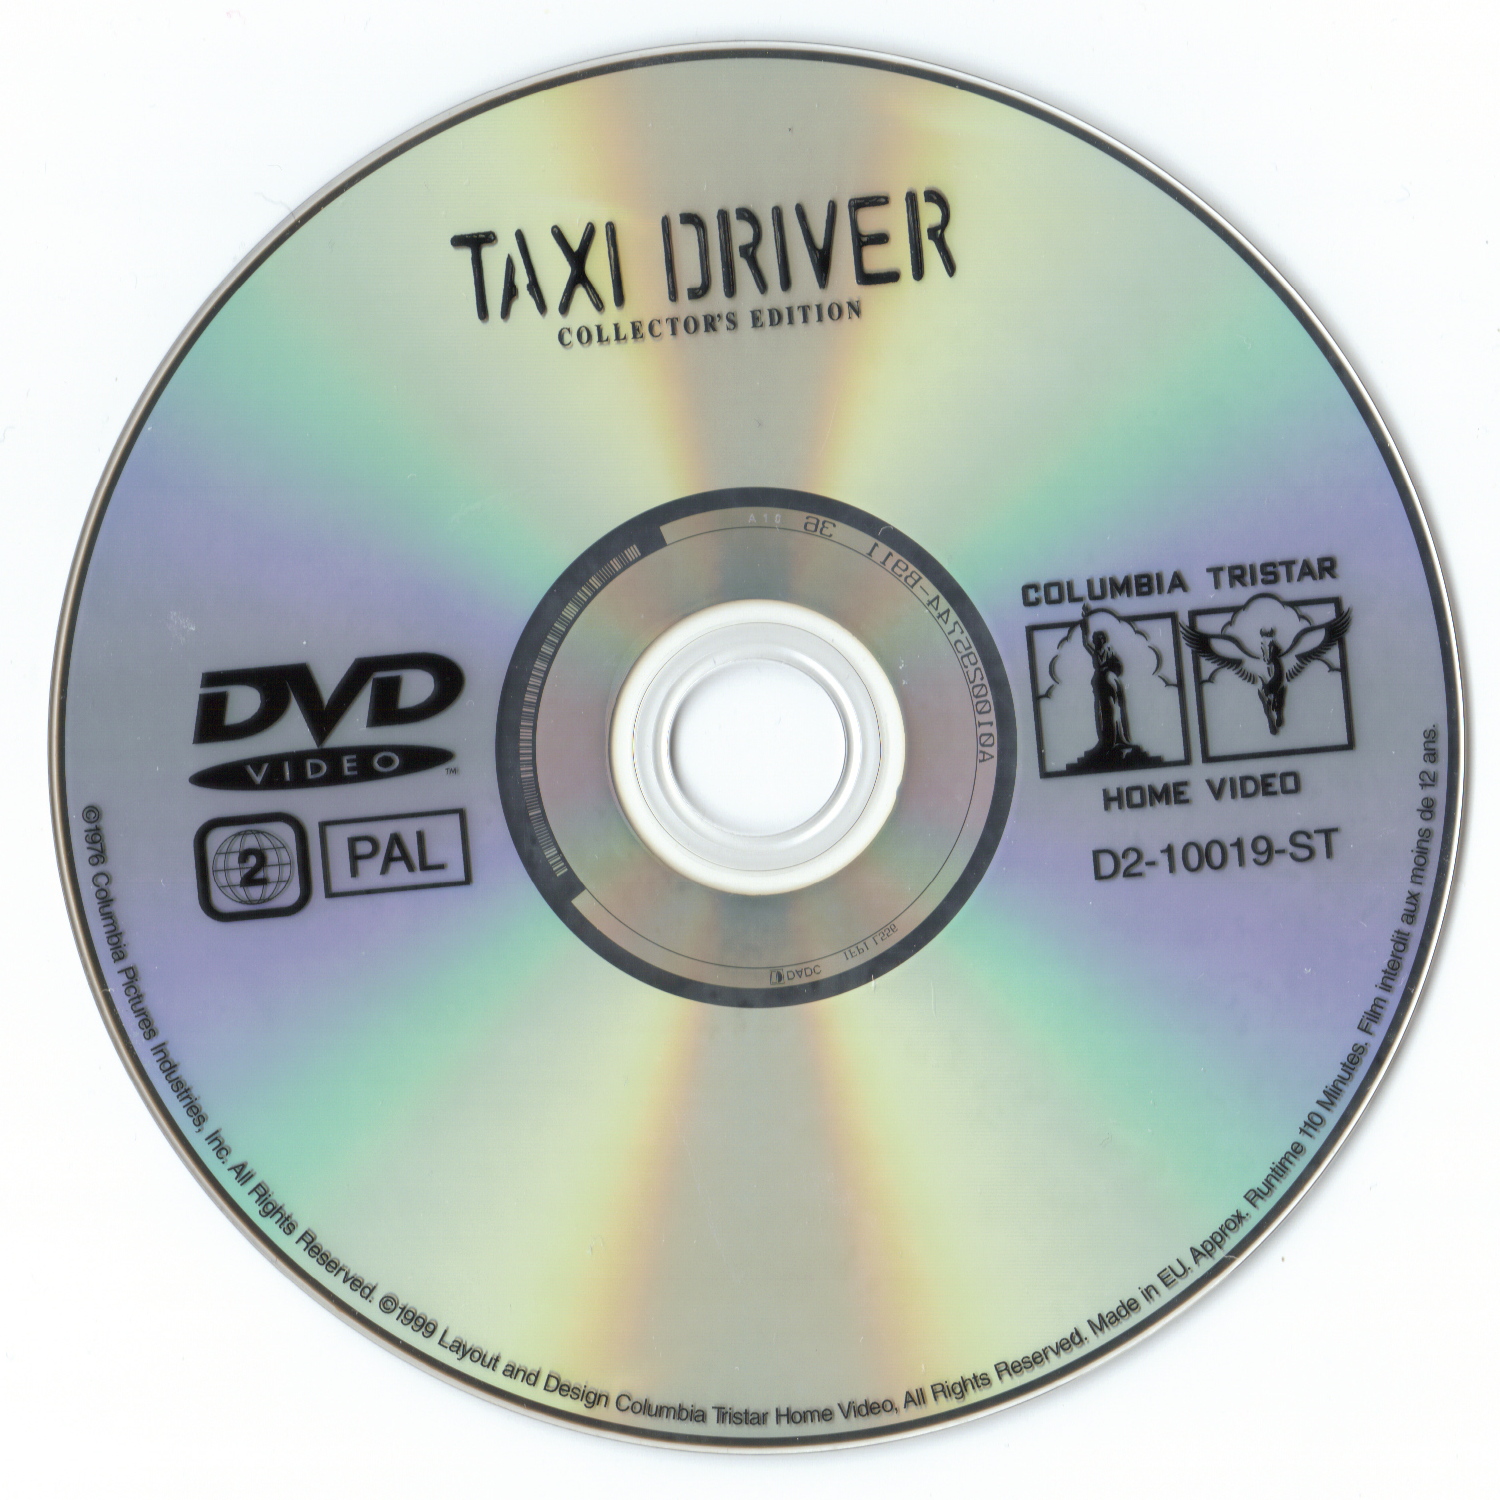 Taxi Driver v2